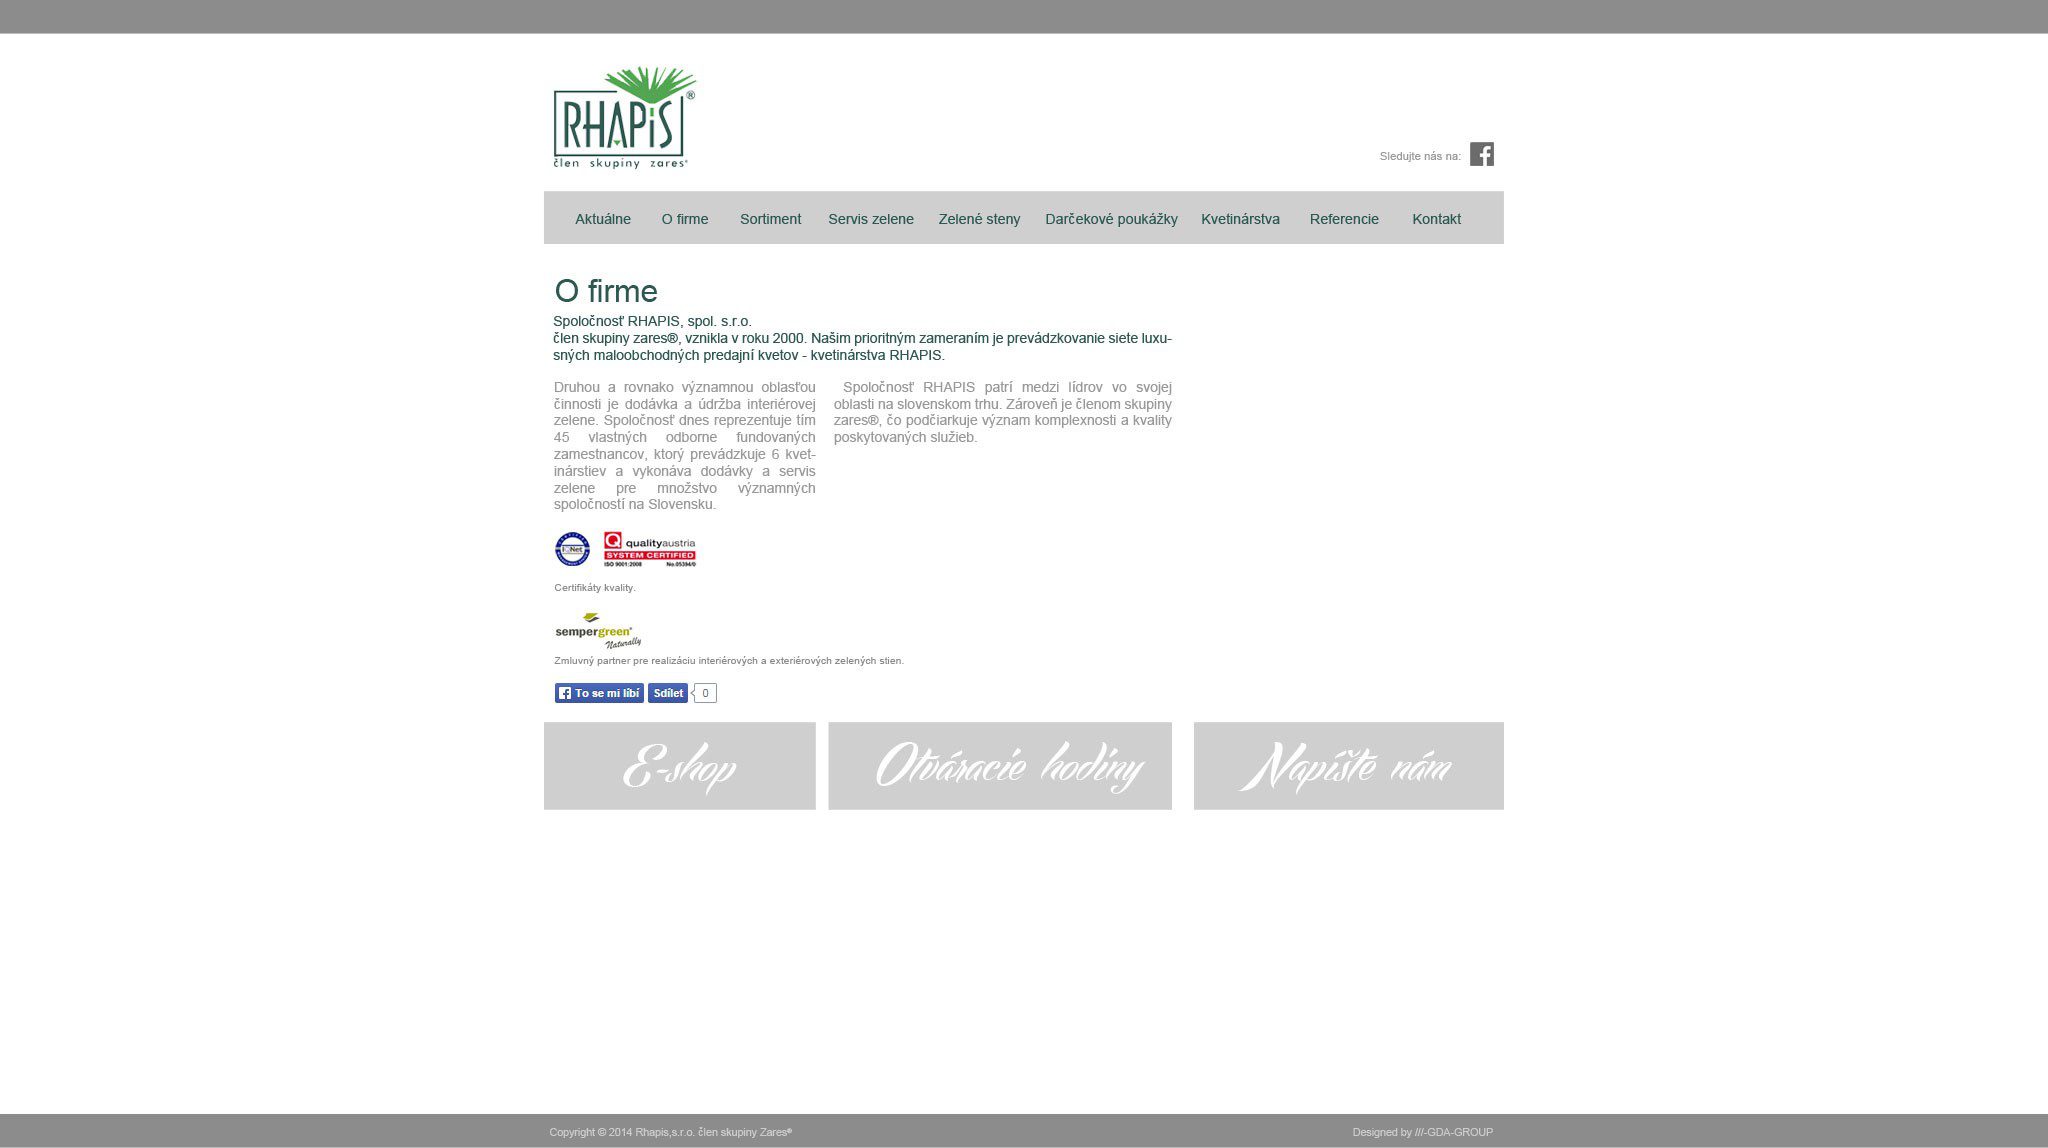 Образование веб-сайтов - RHAPIS - О компании